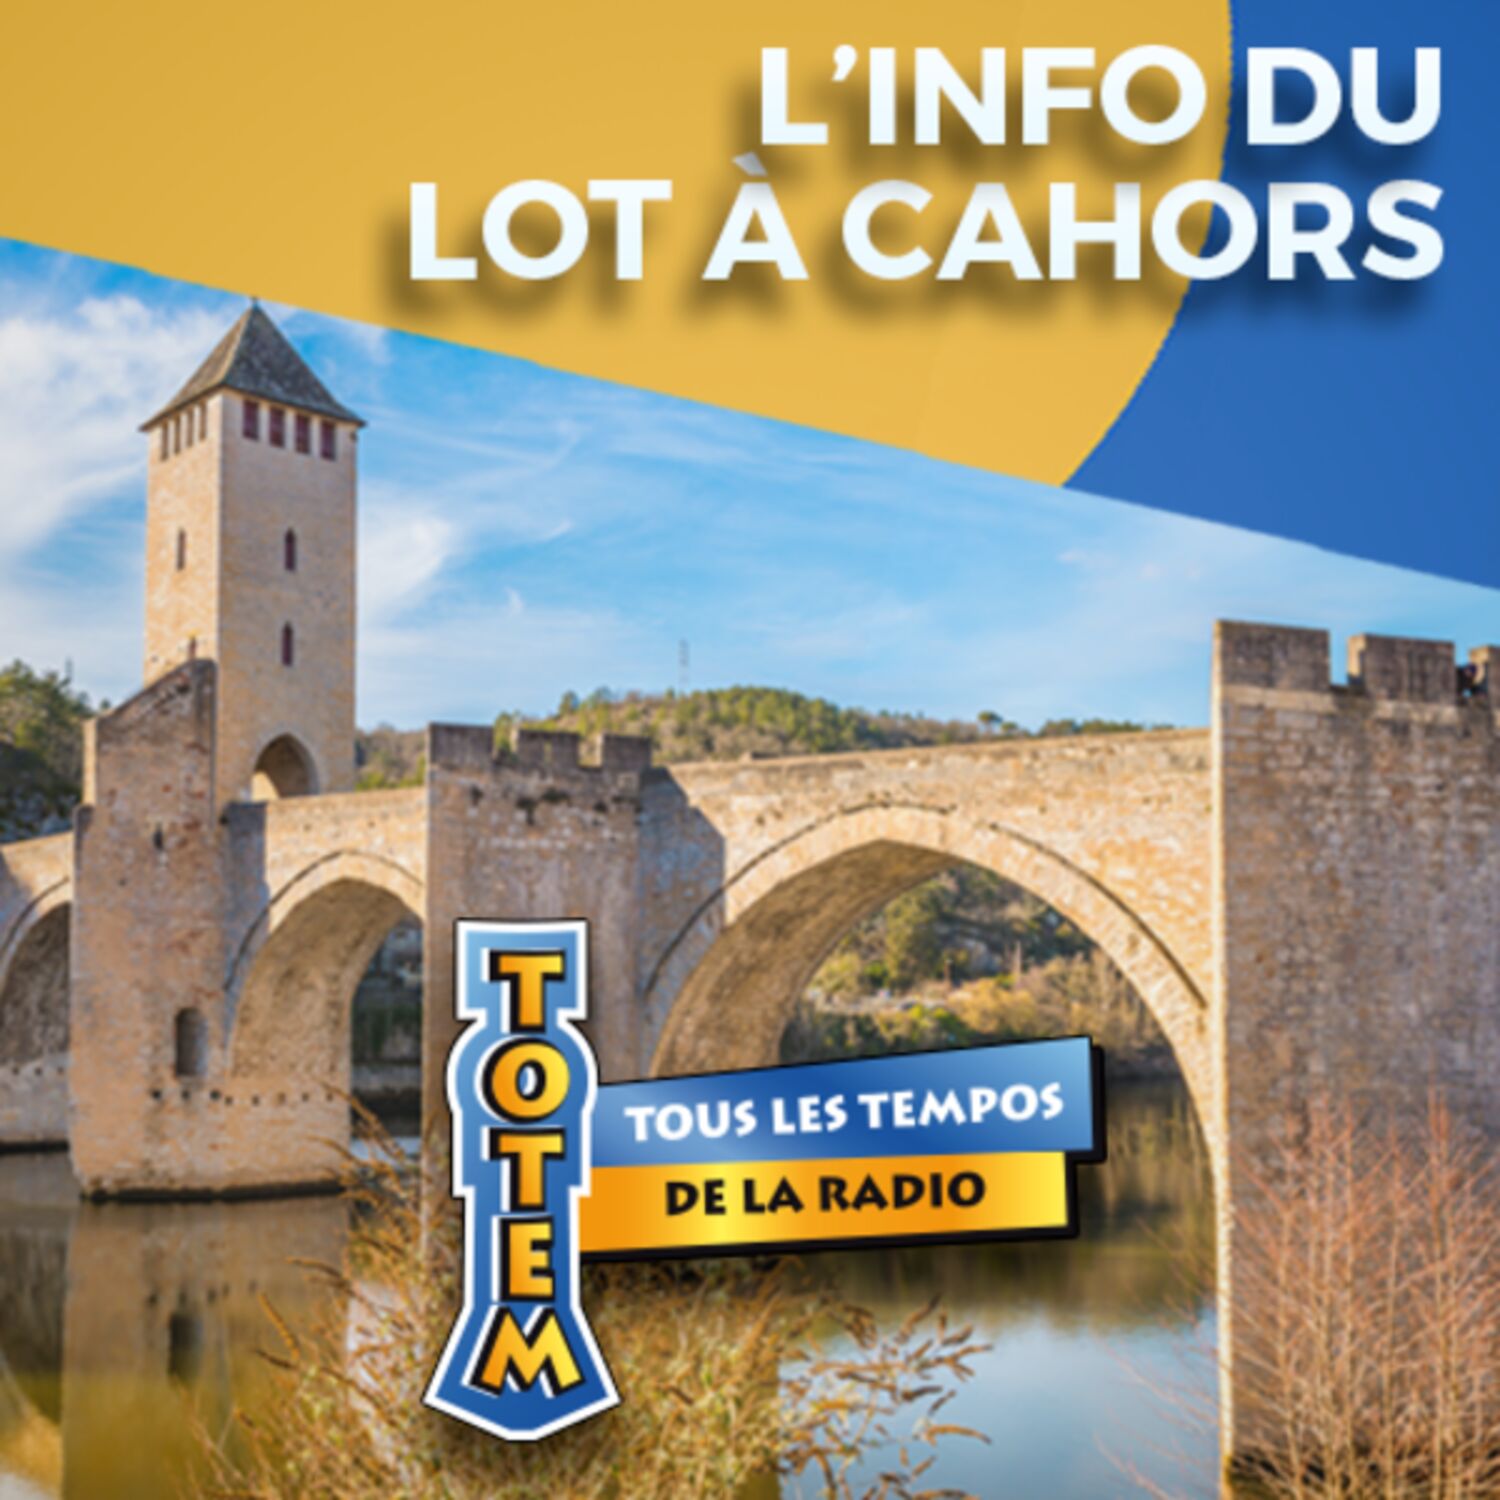 L'info du Lot à Cahors du 10/04/23 à 11h59